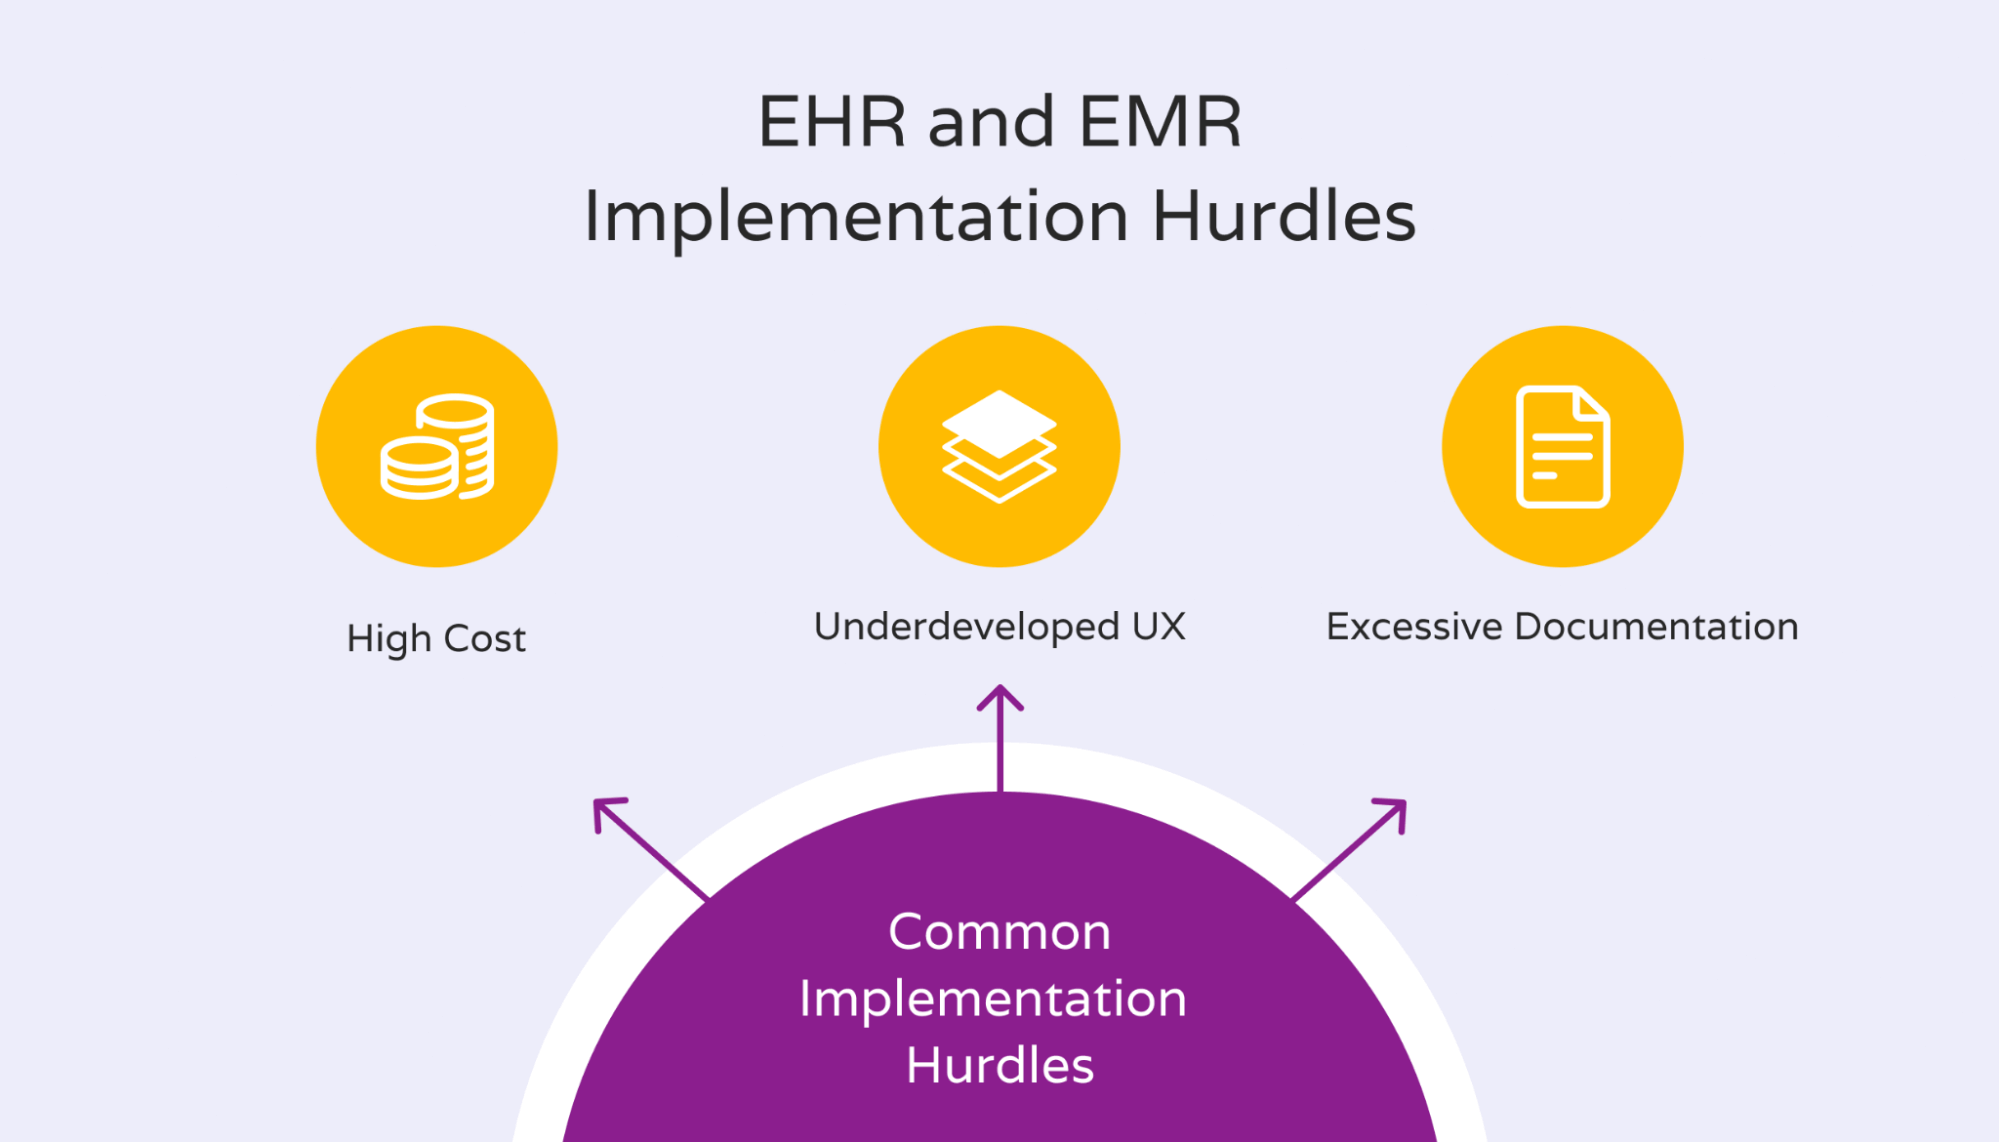 EMR implementation hurdles